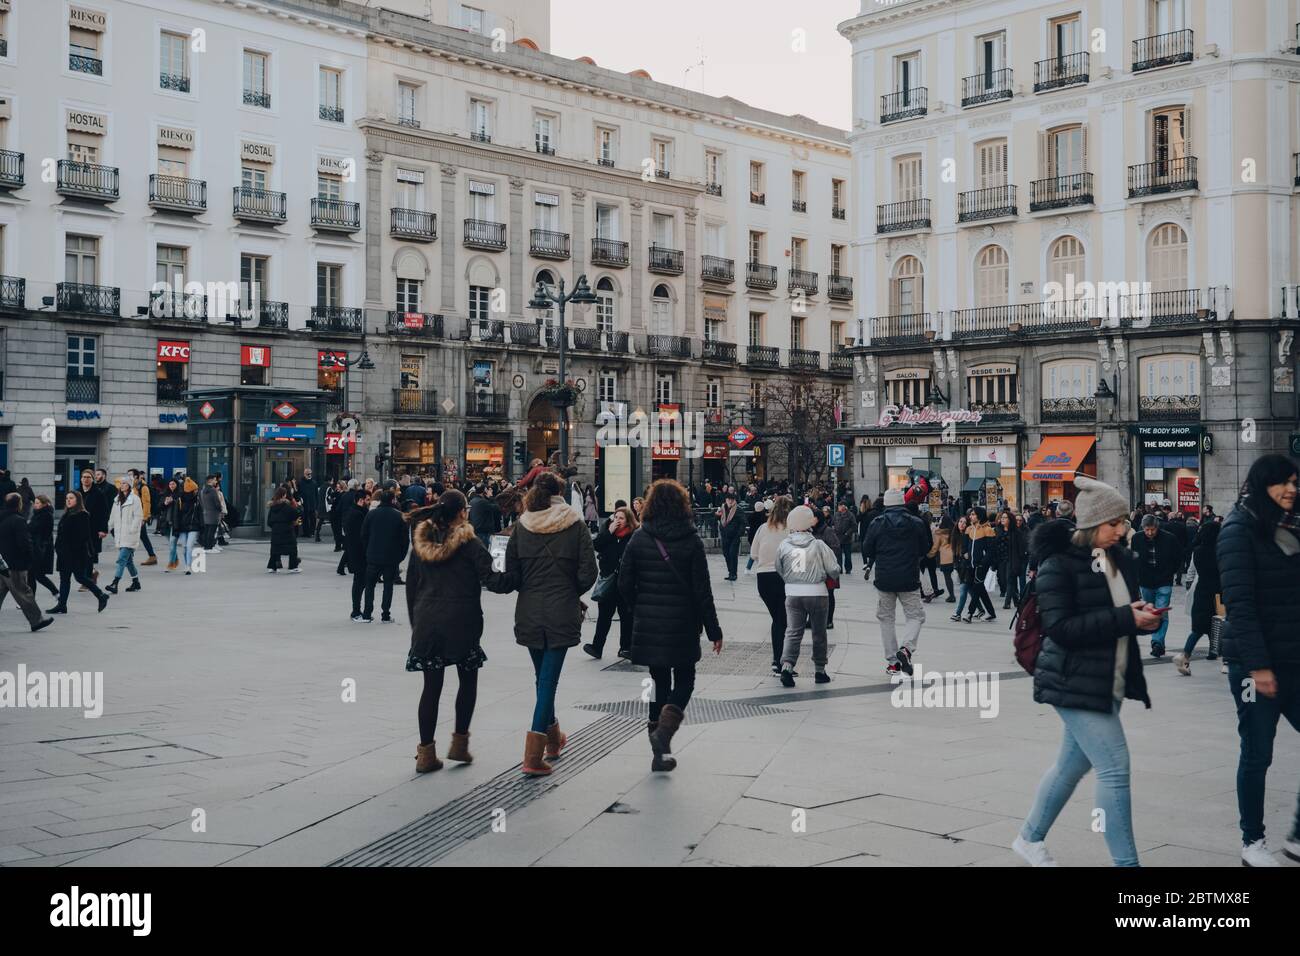 Madrid, España - 26 de enero de 2020: Mucha gente caminando por la Puerta  del Sol, una plaza pública de Madrid y uno de los lugares más conocidos y  concurridos de la